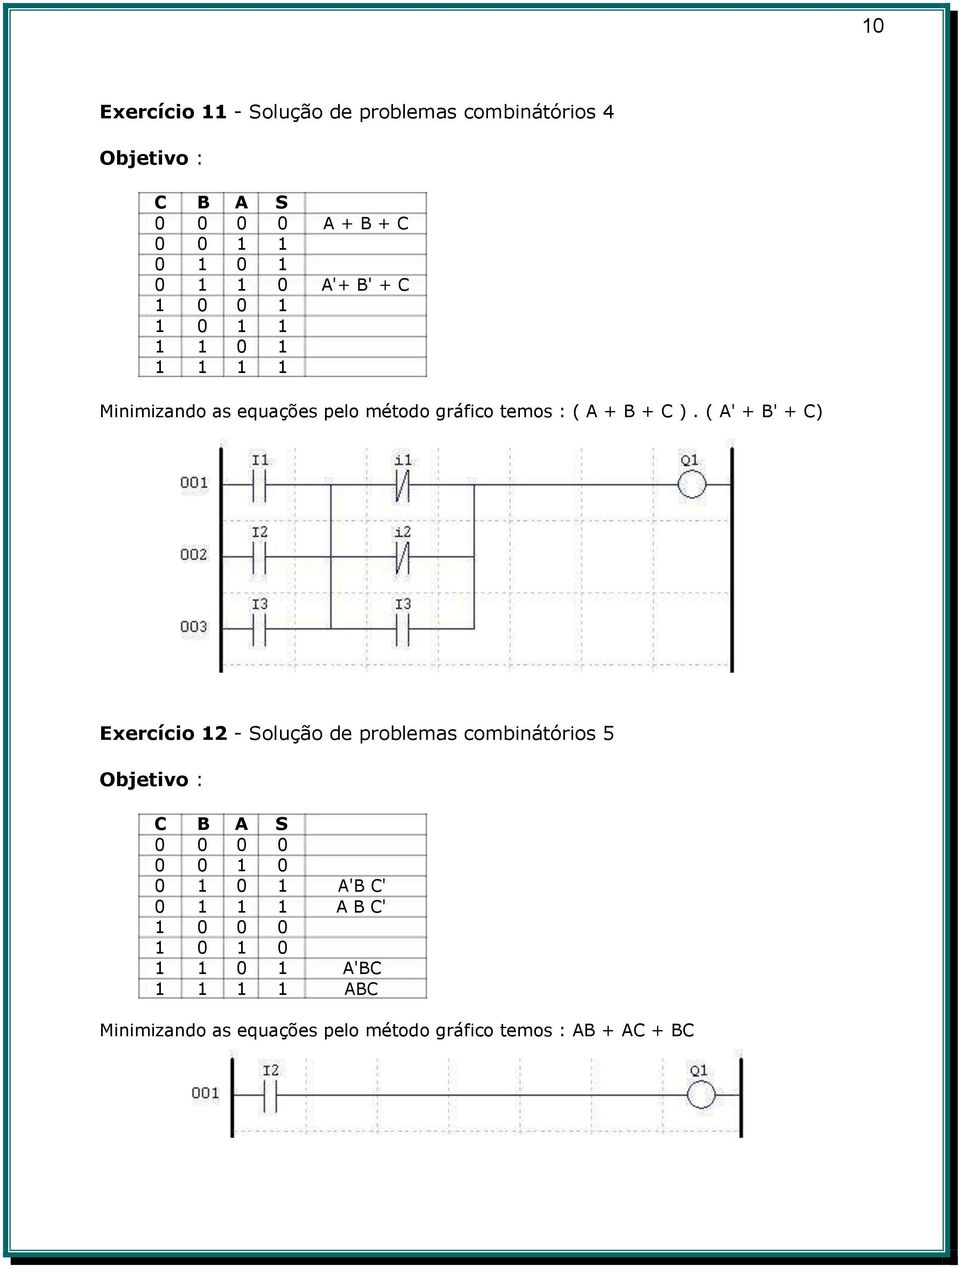 ( A' + B' + C) Exercício 12 - Solução de problemas combinátórios 5 C B A S 0 0 0 0 0 0 1 0 0 1 0 1 A'B C' 0 1